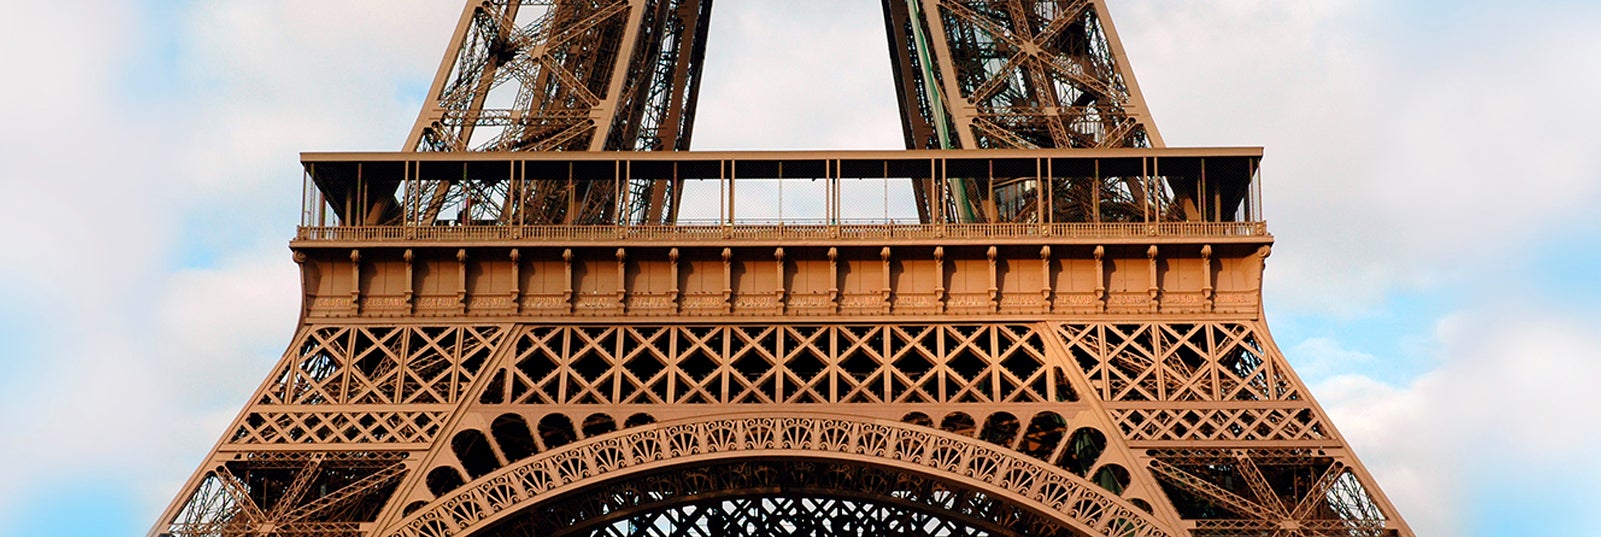 Tour Eiffel - Le célébrissime symbole de Paris